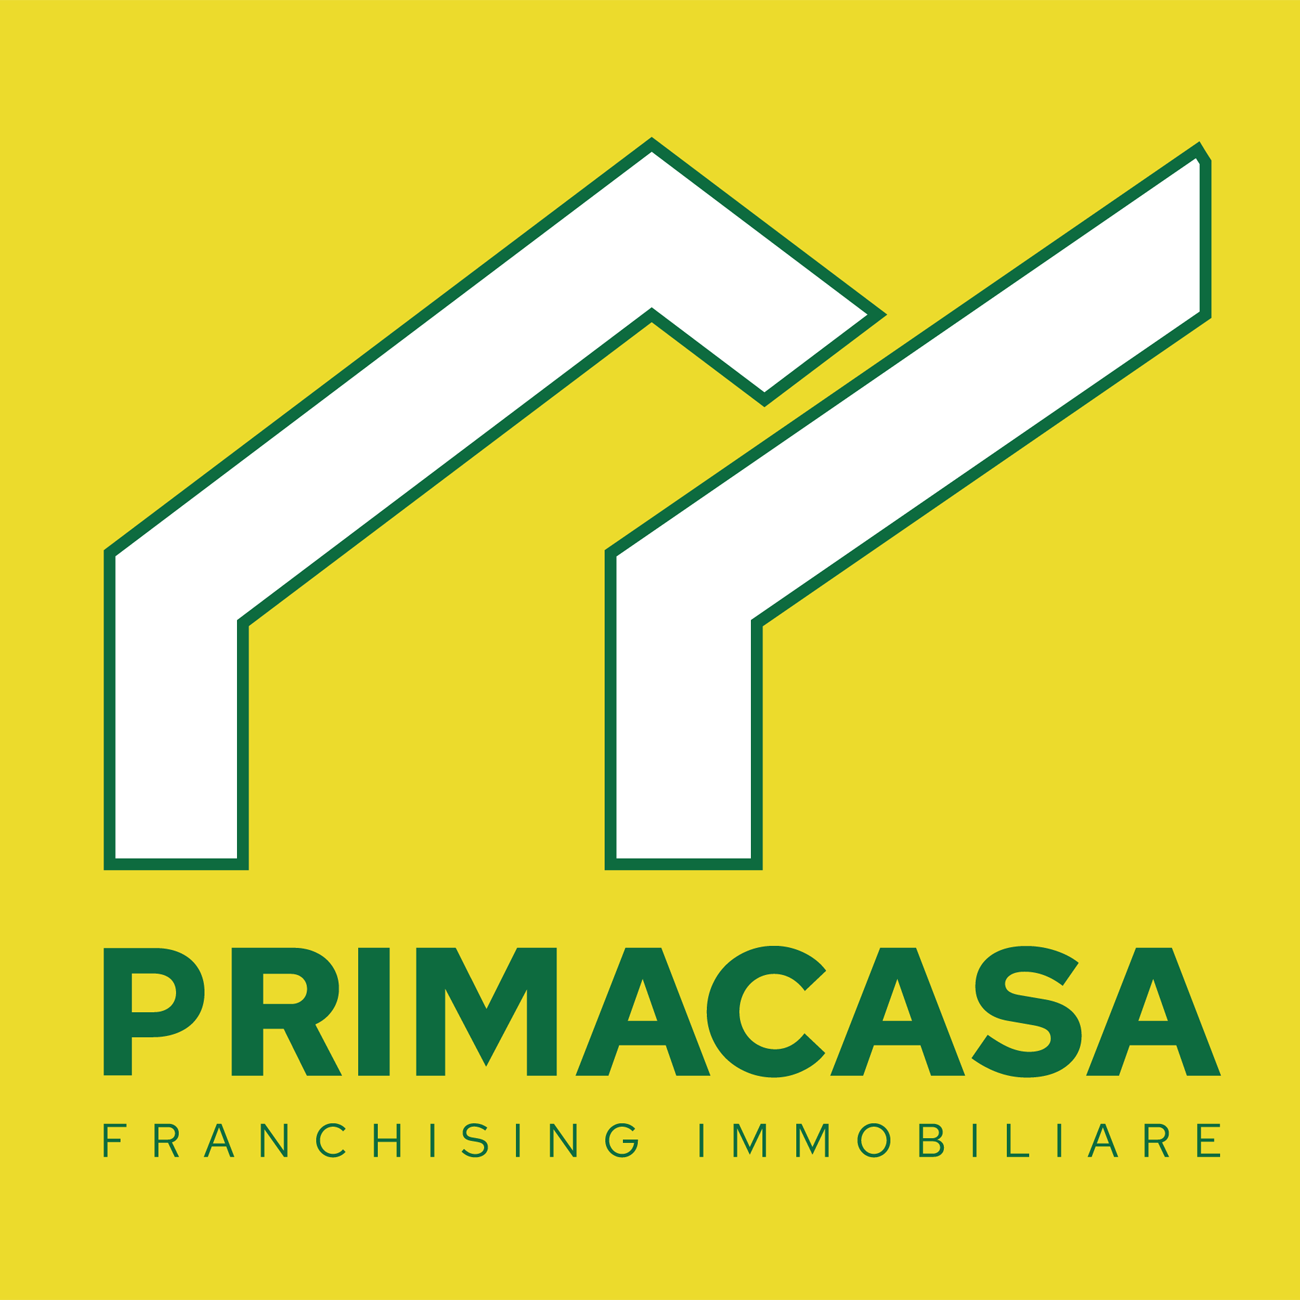 www.primacasa.it